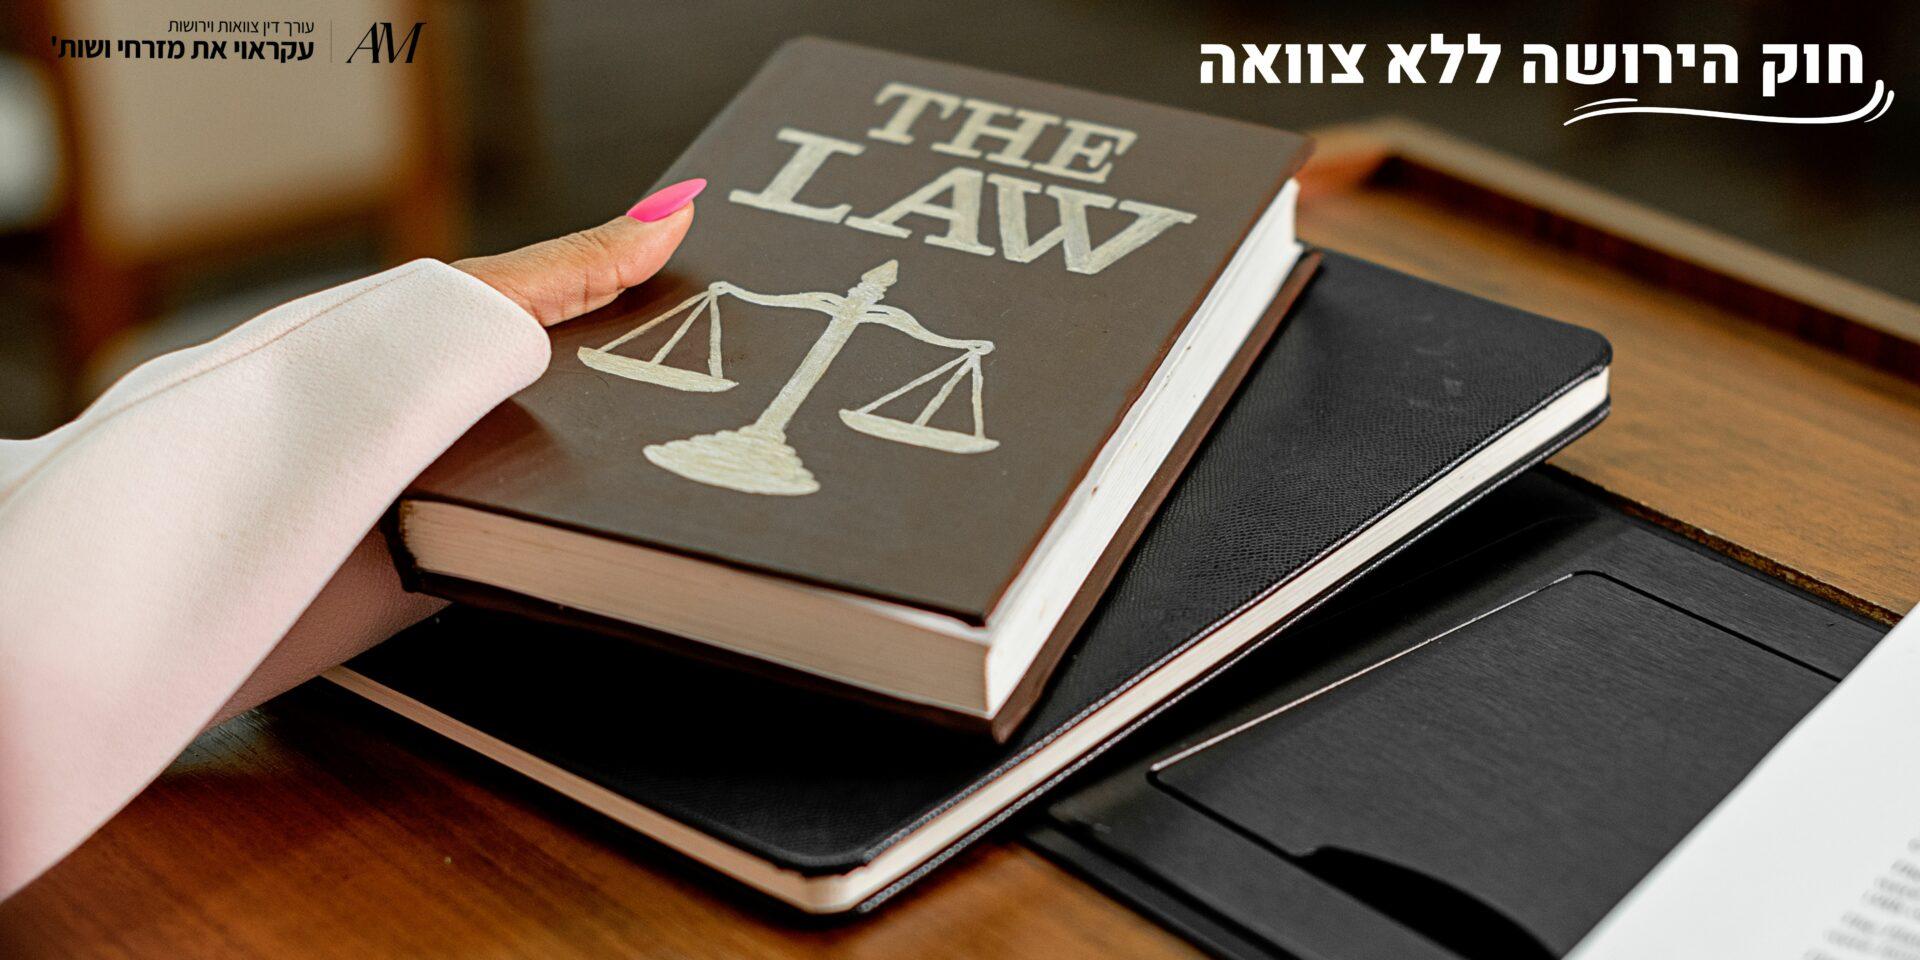 חוק הירושה ללא צוואה - עורכי דין עקראוי את מזרחי ושות'